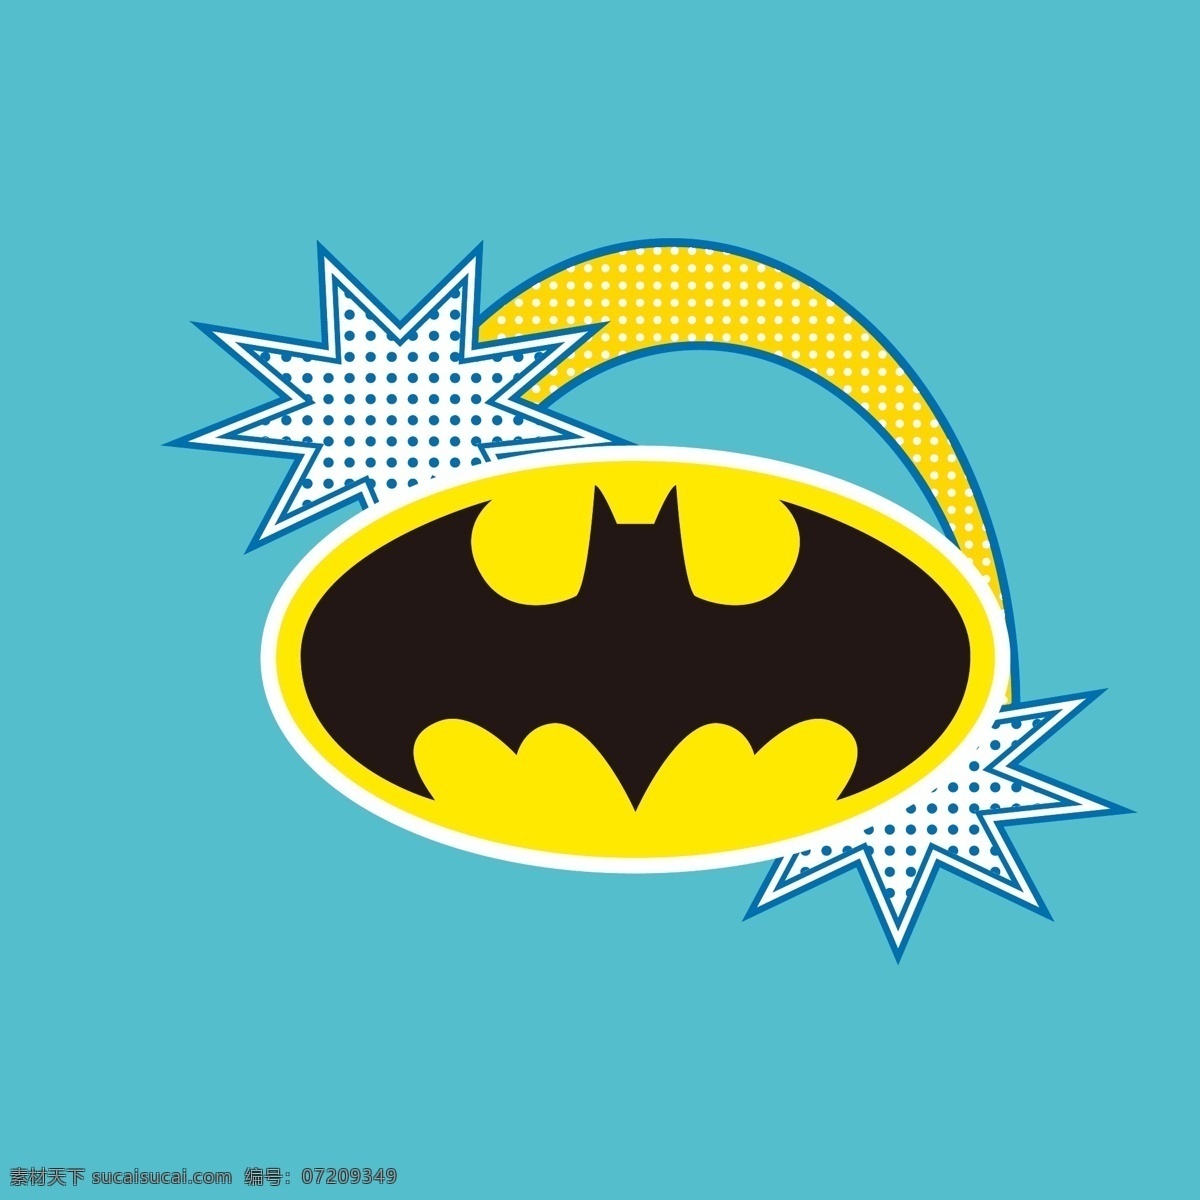 蝙蝠侠标志 标志 超人 superman 蝙蝠侠 batman 闪电侠 flash 华纳 dc漫画 超级英雄 英雄联盟 卡通形象 其他人物 矢量人物 矢量 超人英雄标志 小图标 标识标志图标